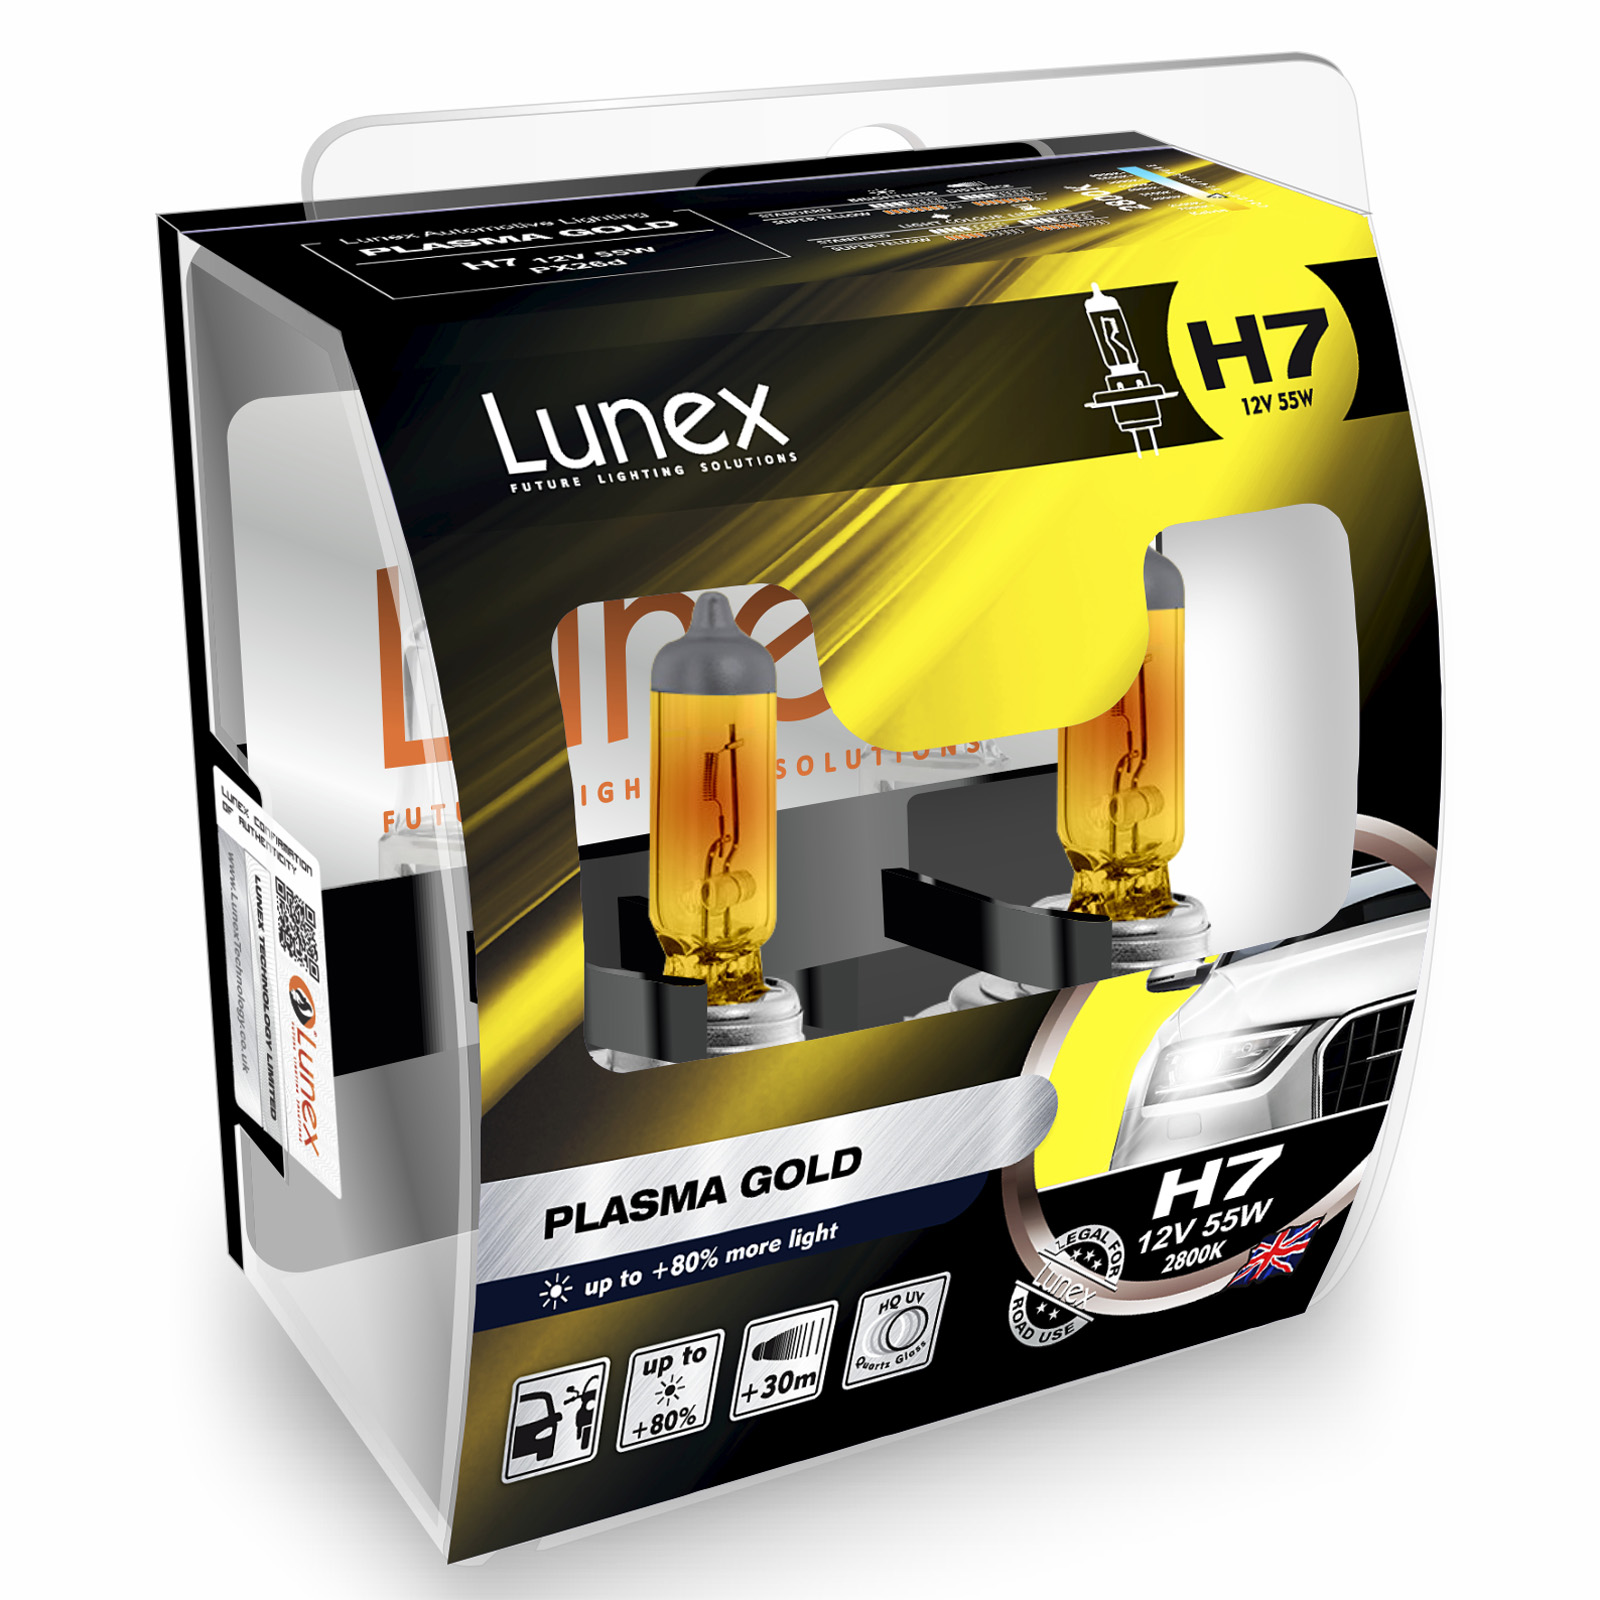 LUNEX H7 Halogène Plasma Gold 80/% Plus De Lumière Phare de voiture Ampoules 2800K Twin